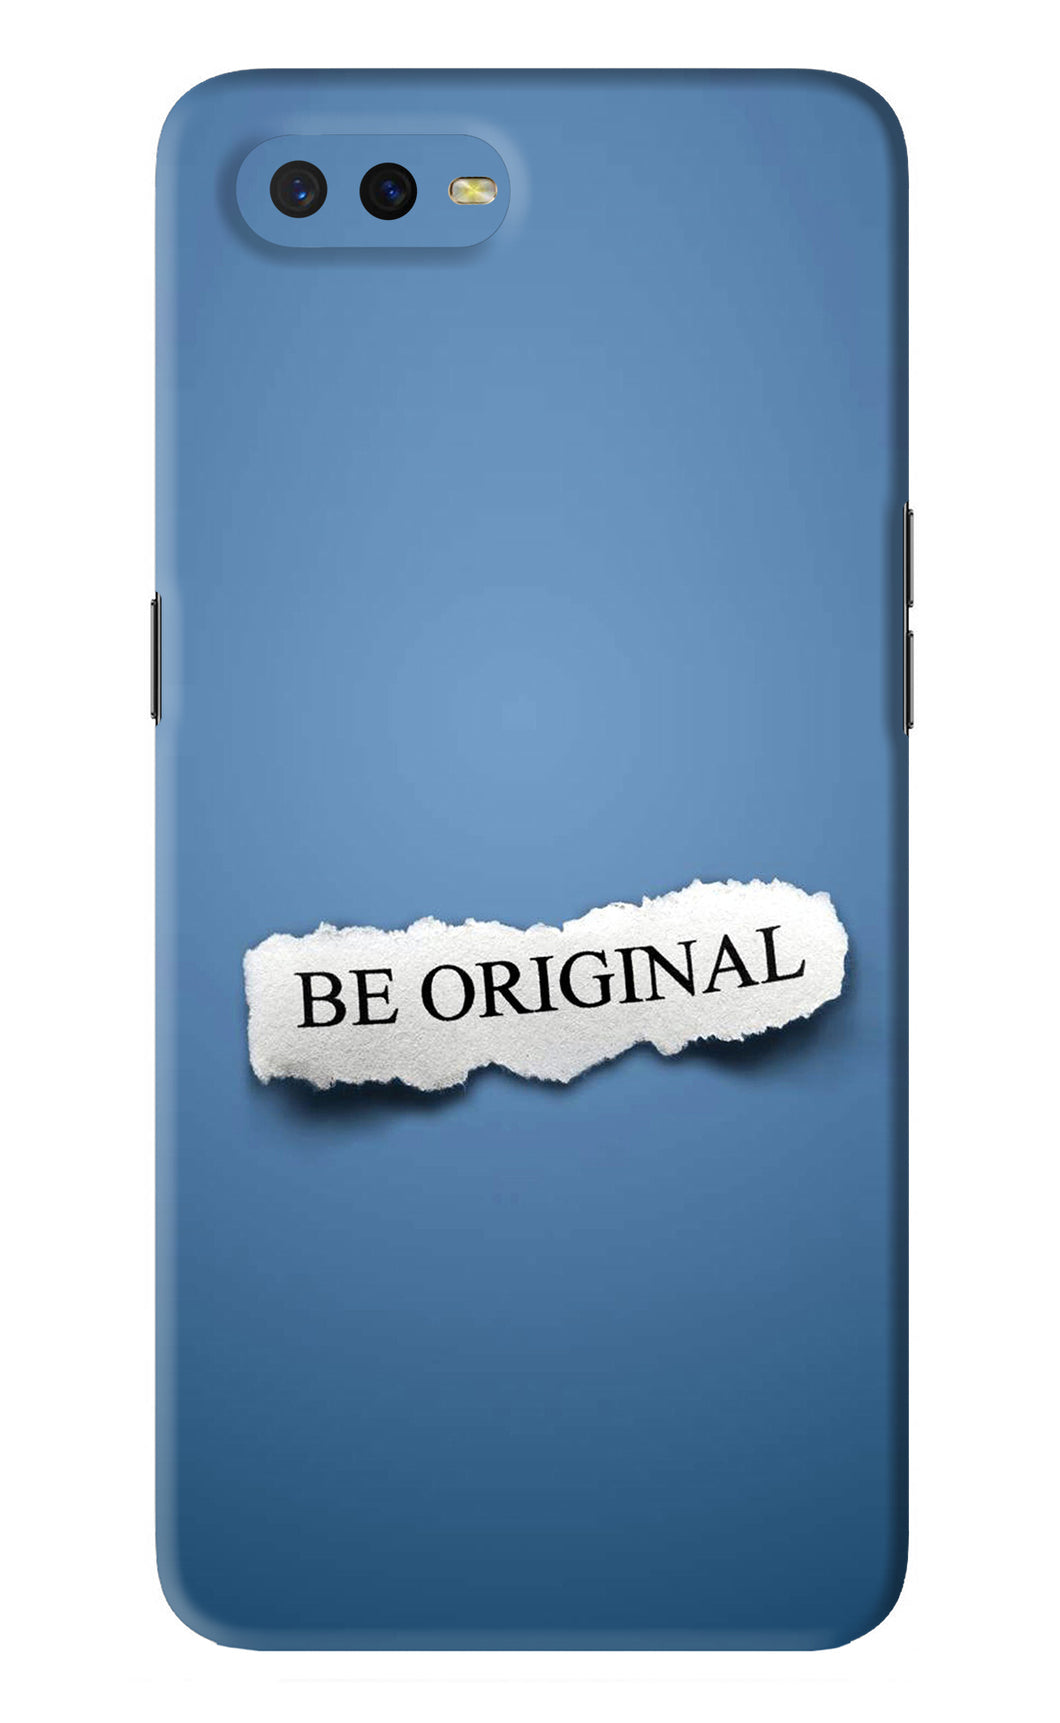 Be Original Oppo K1 Back Skin Wrap